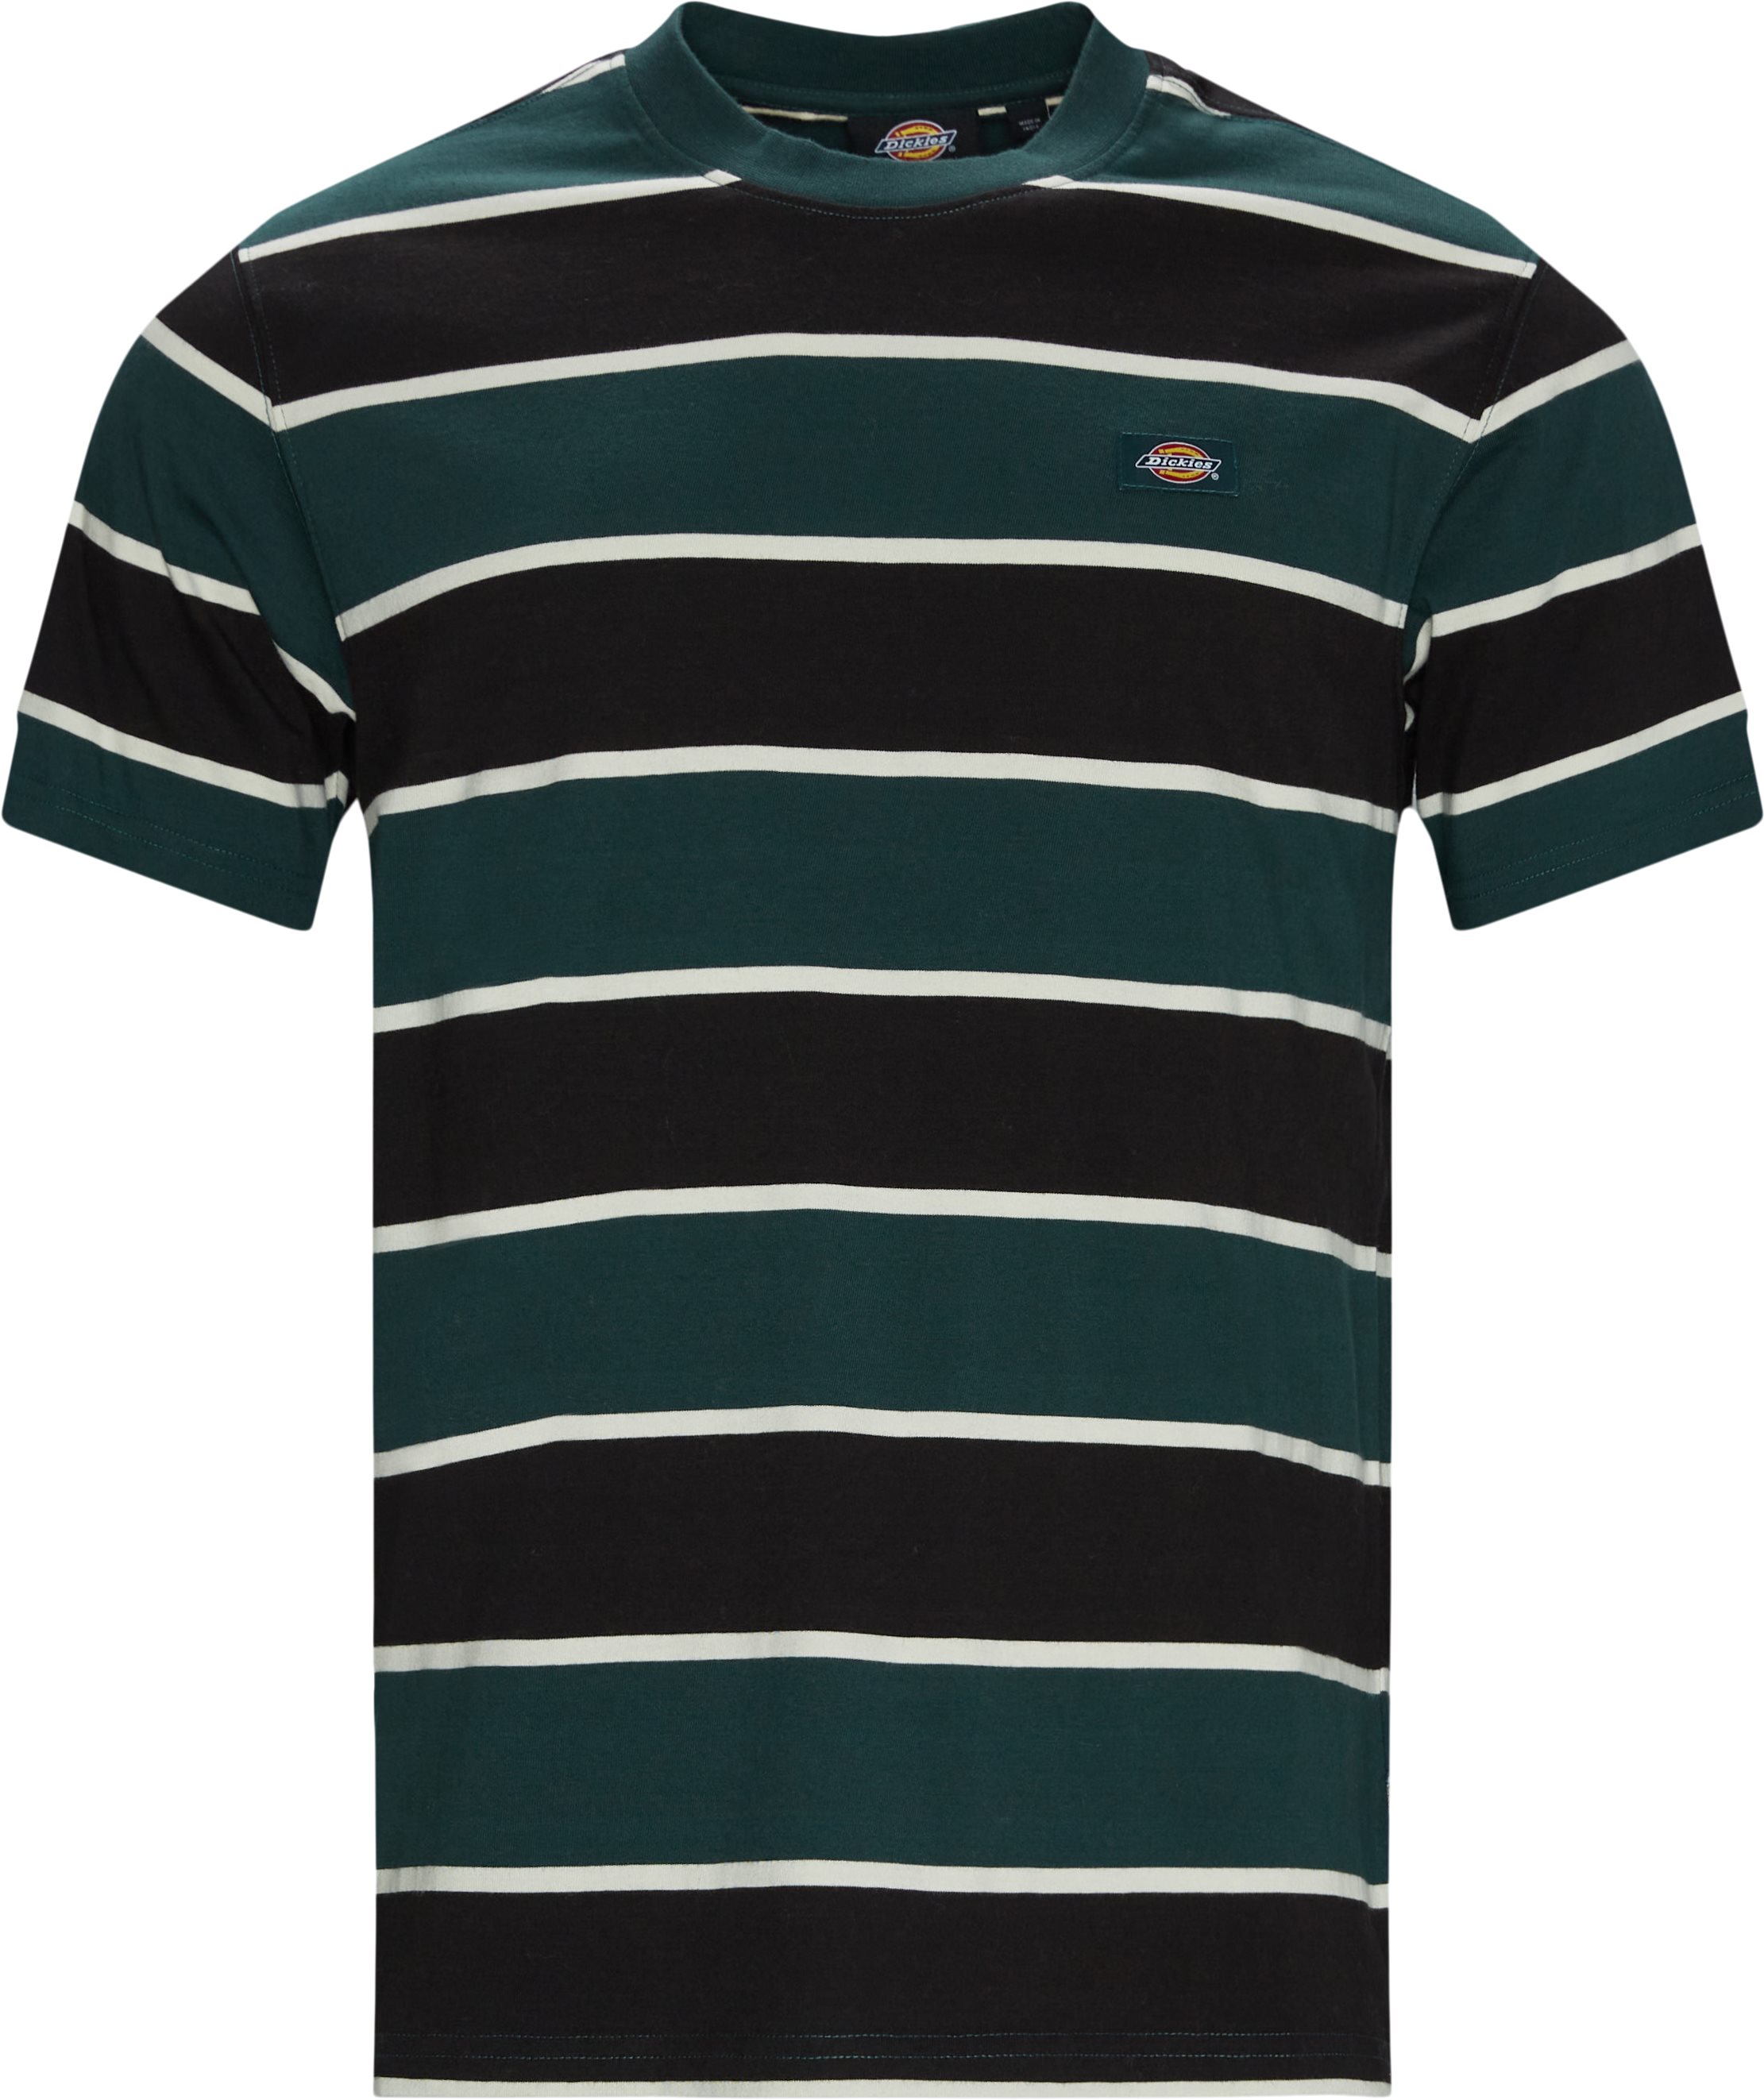 Oakhaven Tee - T-shirts - Regular fit - Grøn